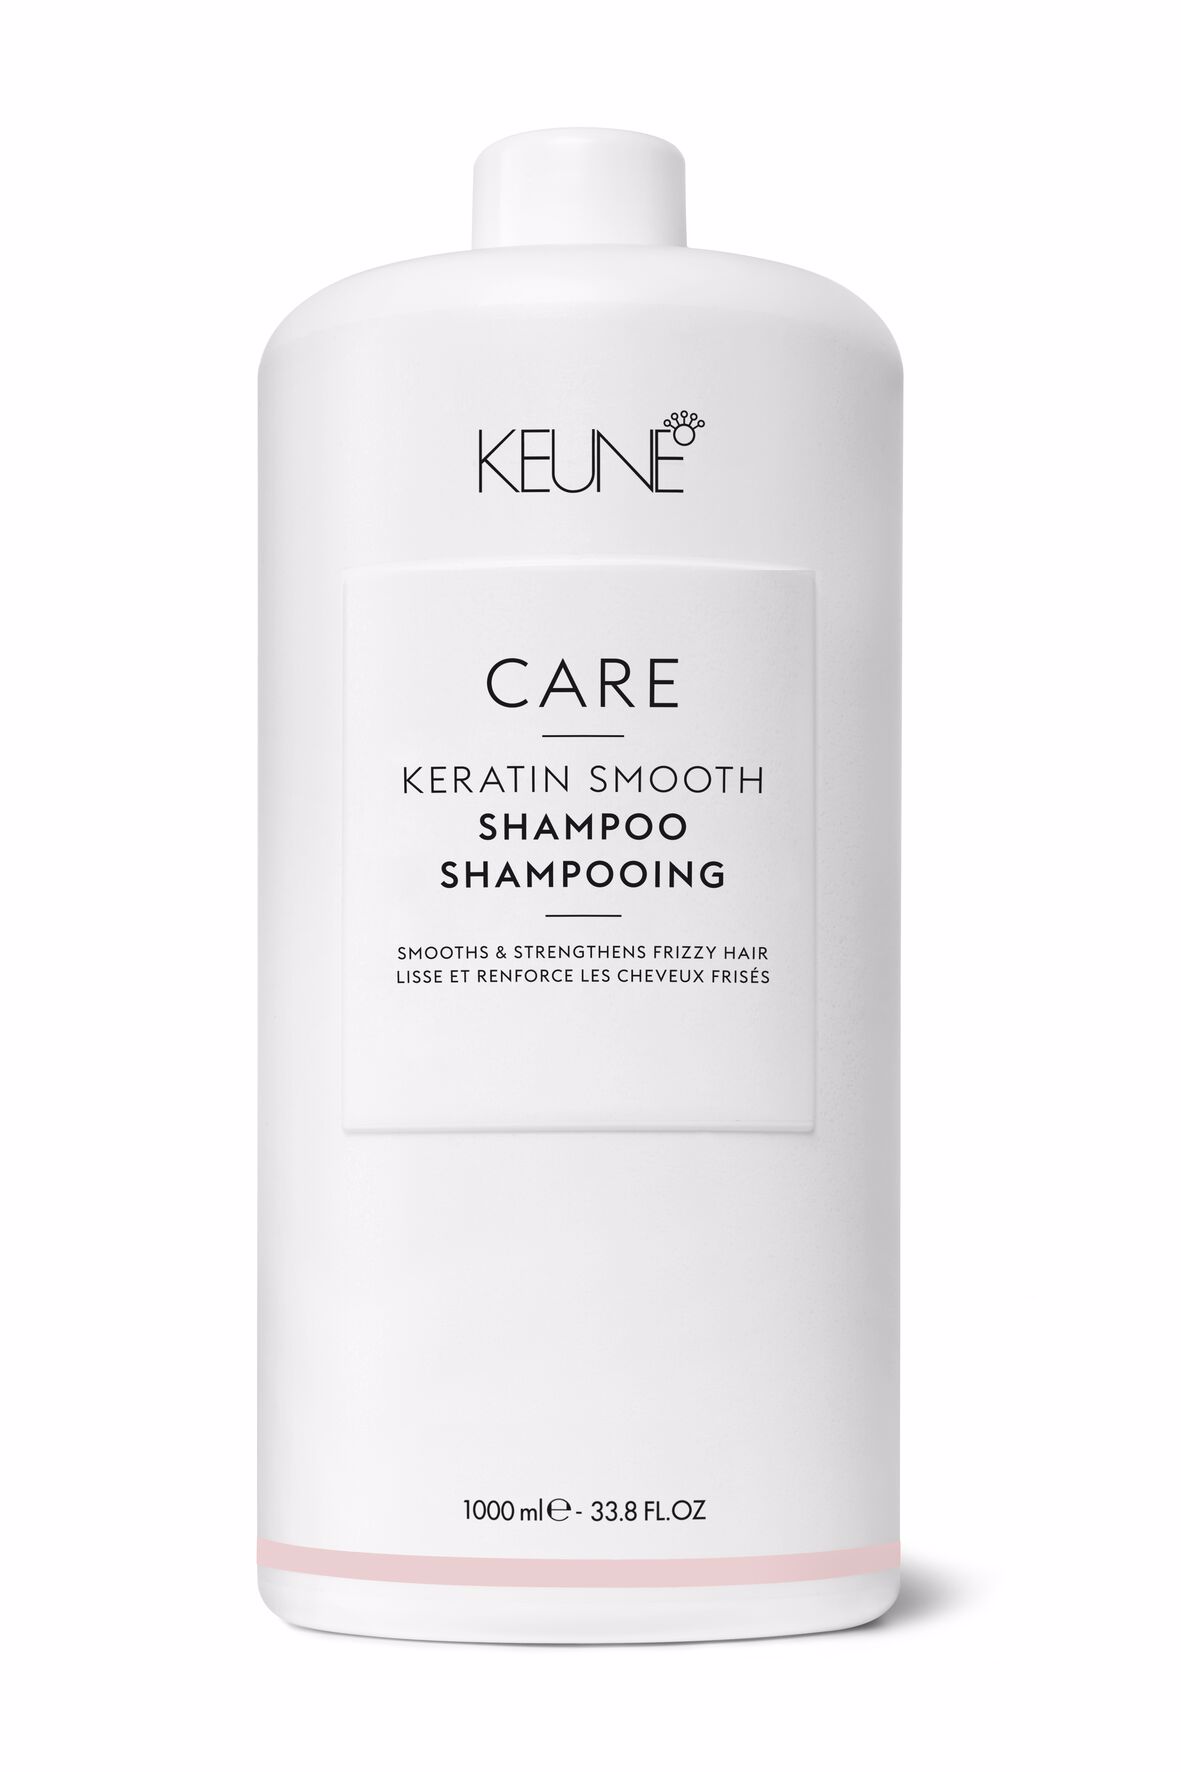 Träumen Sie von glatten, anti-Frizz Haaren? Probieren Sie unser Keratin Smooth Shampoo. Dieses Haarprodukt pflegt, spendet Feuchtigkeit und stärkt trockenes Haar. Auf keune.ch erhältlich.